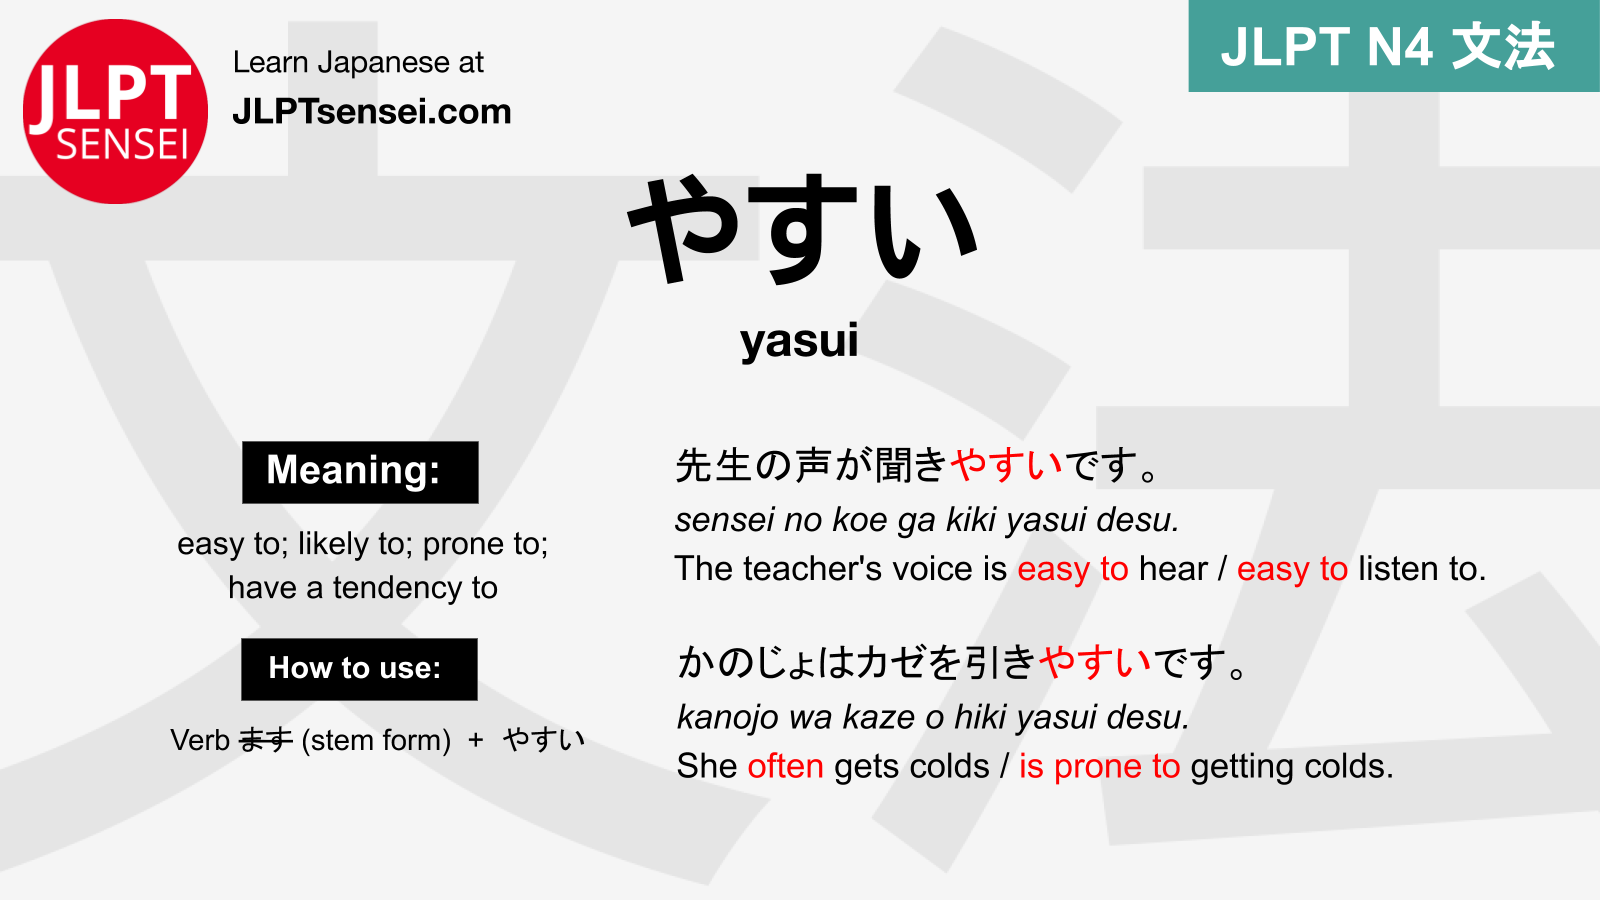 O que realmente significa #ヤバイ #yabai #japones #nihongo #日本語